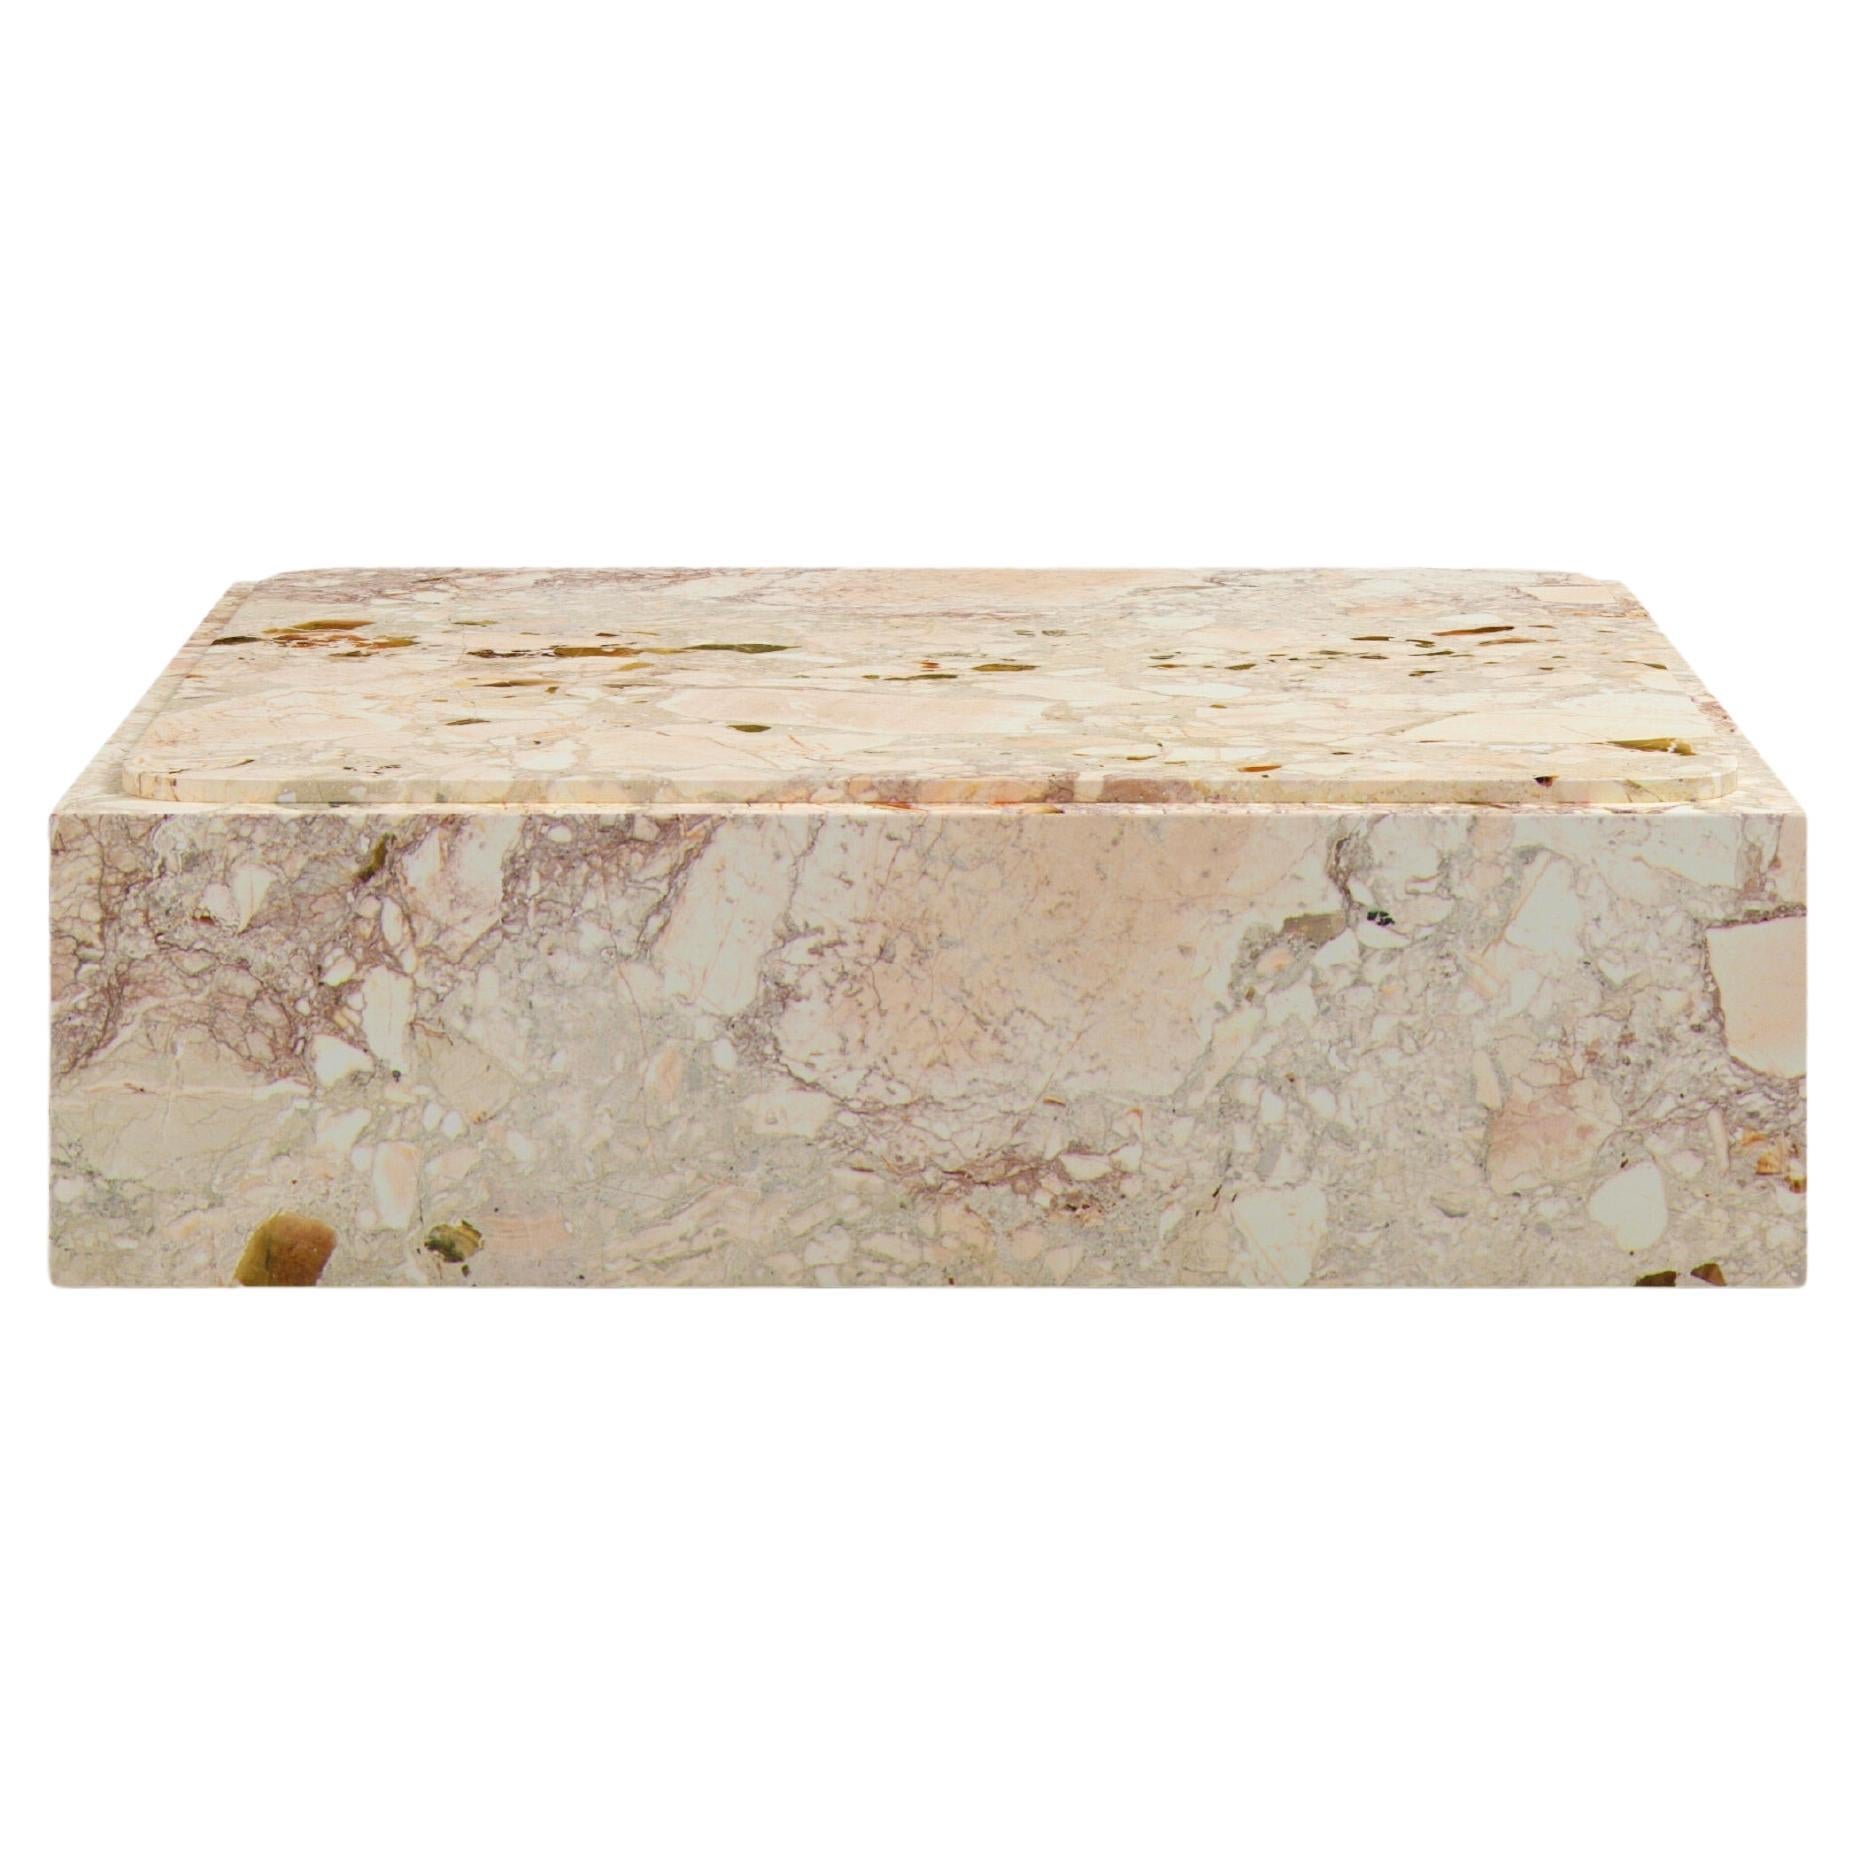 FORM(LA) Cubo Square Plinth Coffee Table 42”L x 42"W x 13”H Breccia Rosa Marble